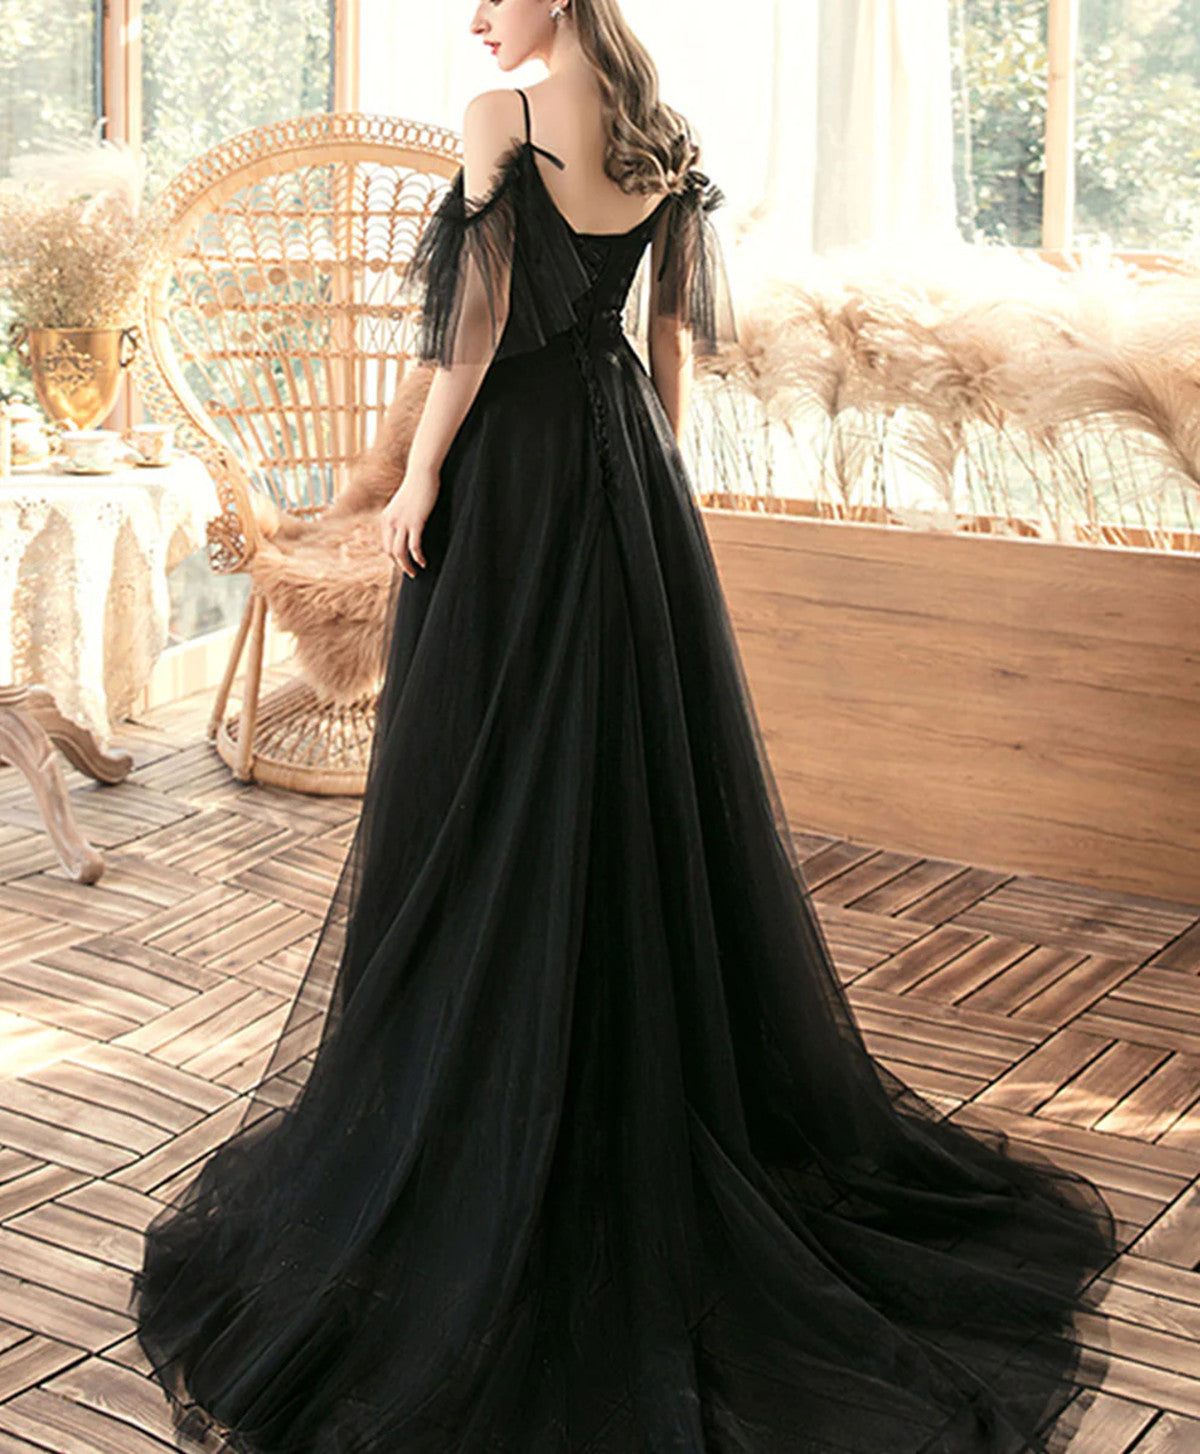 Black A-line Off Shoulder Tulle Beaded Prom Dress, Black Long Evening Dress